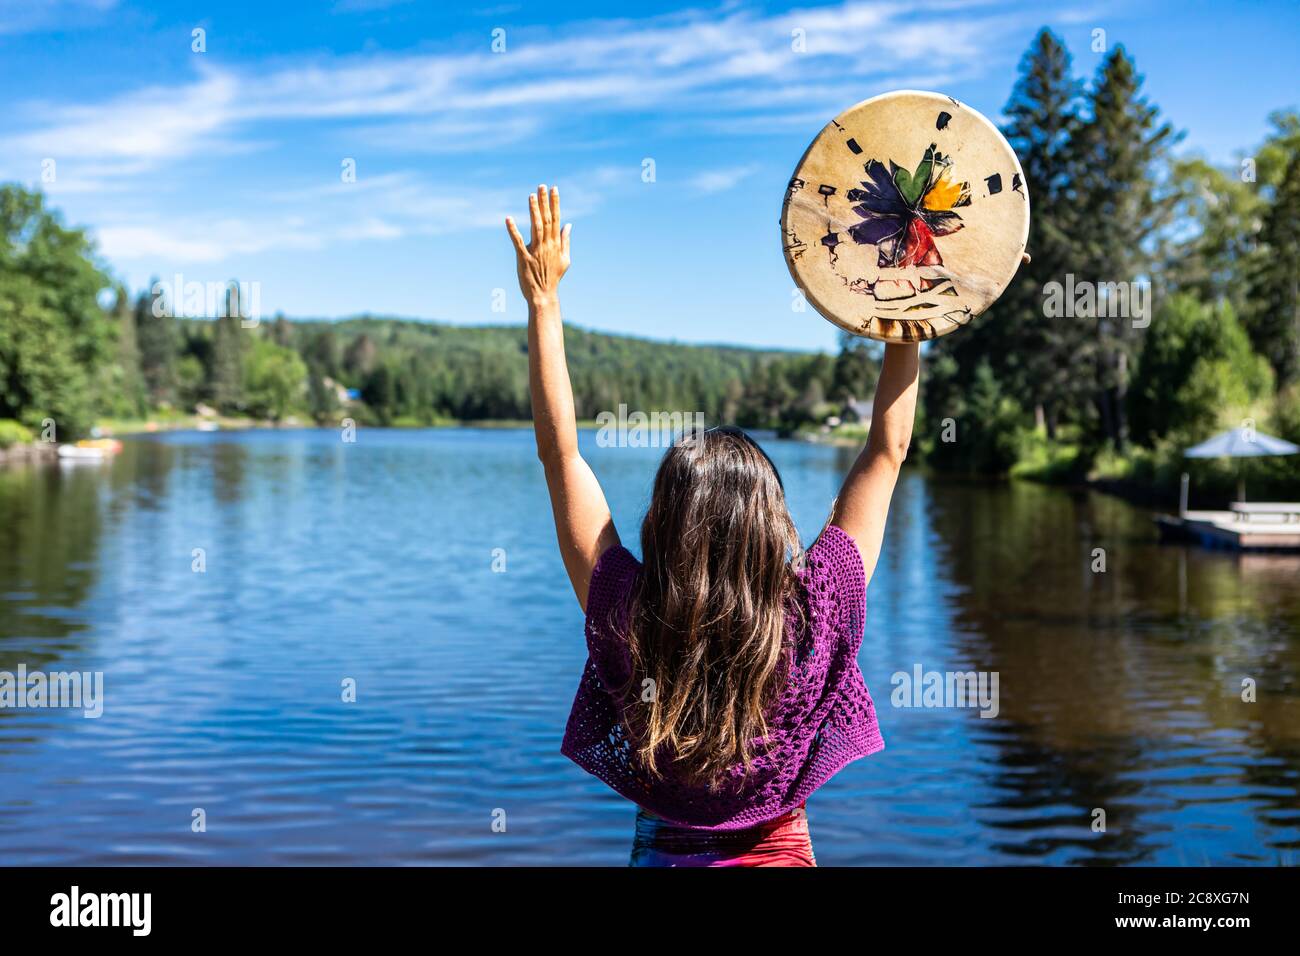 Junge Frau, die einen rituellen Tanz am Ufer eines kanadischen Sees aufführt und eine einheimische, handbemalte Trommel oder Tamburin in ihren erhobenen Händen hält. Stockfoto